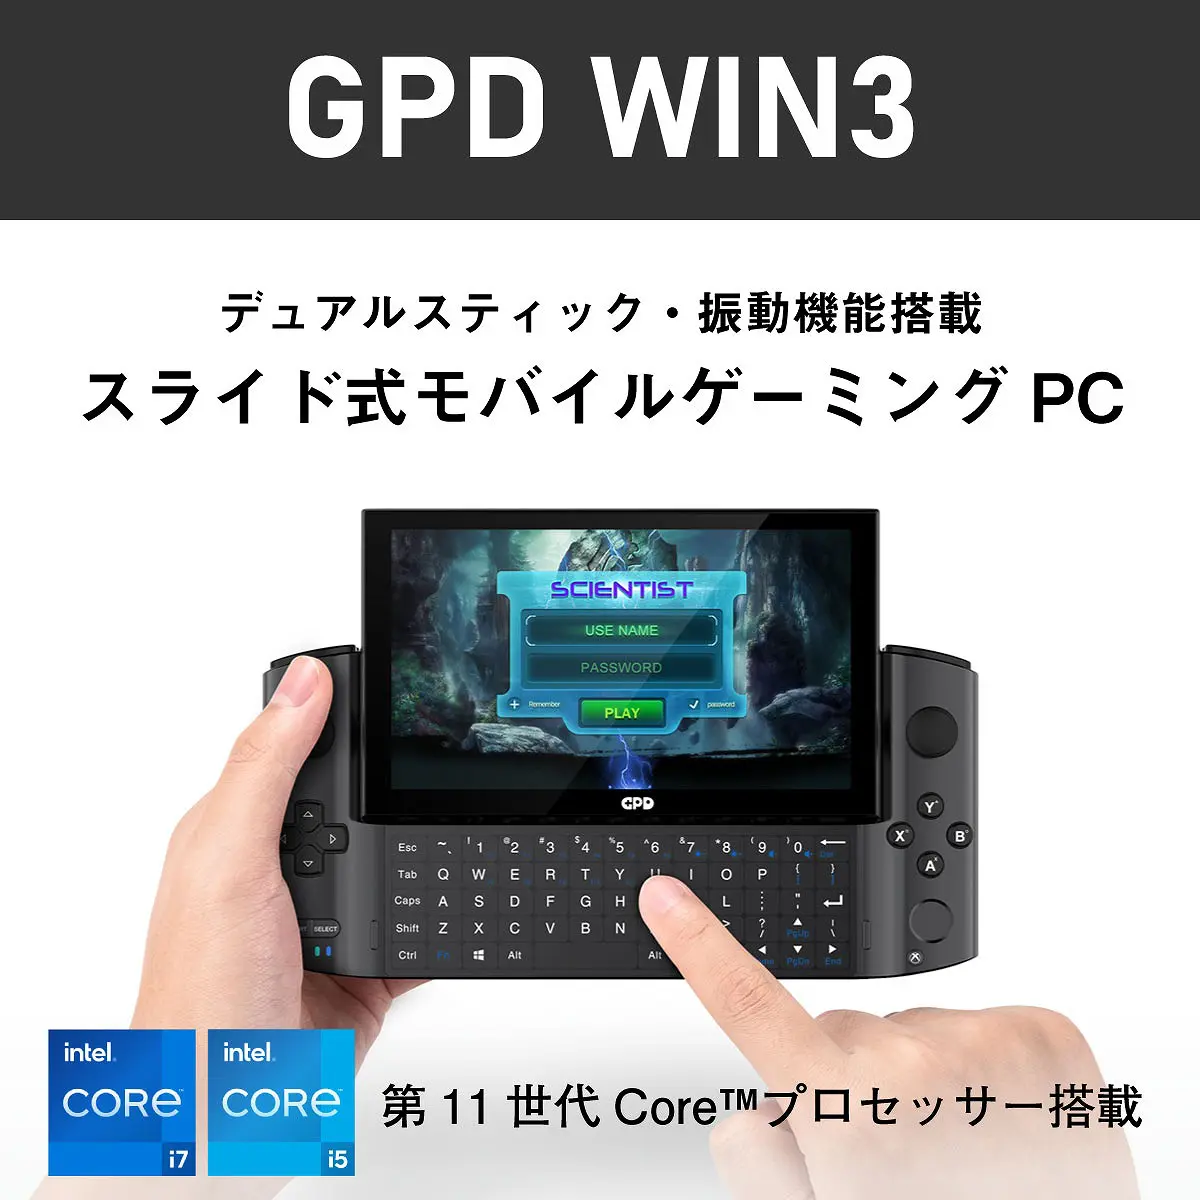 ゲーム機のような見た目でPCゲームをプレイできる「GPD WIN3」が発売 